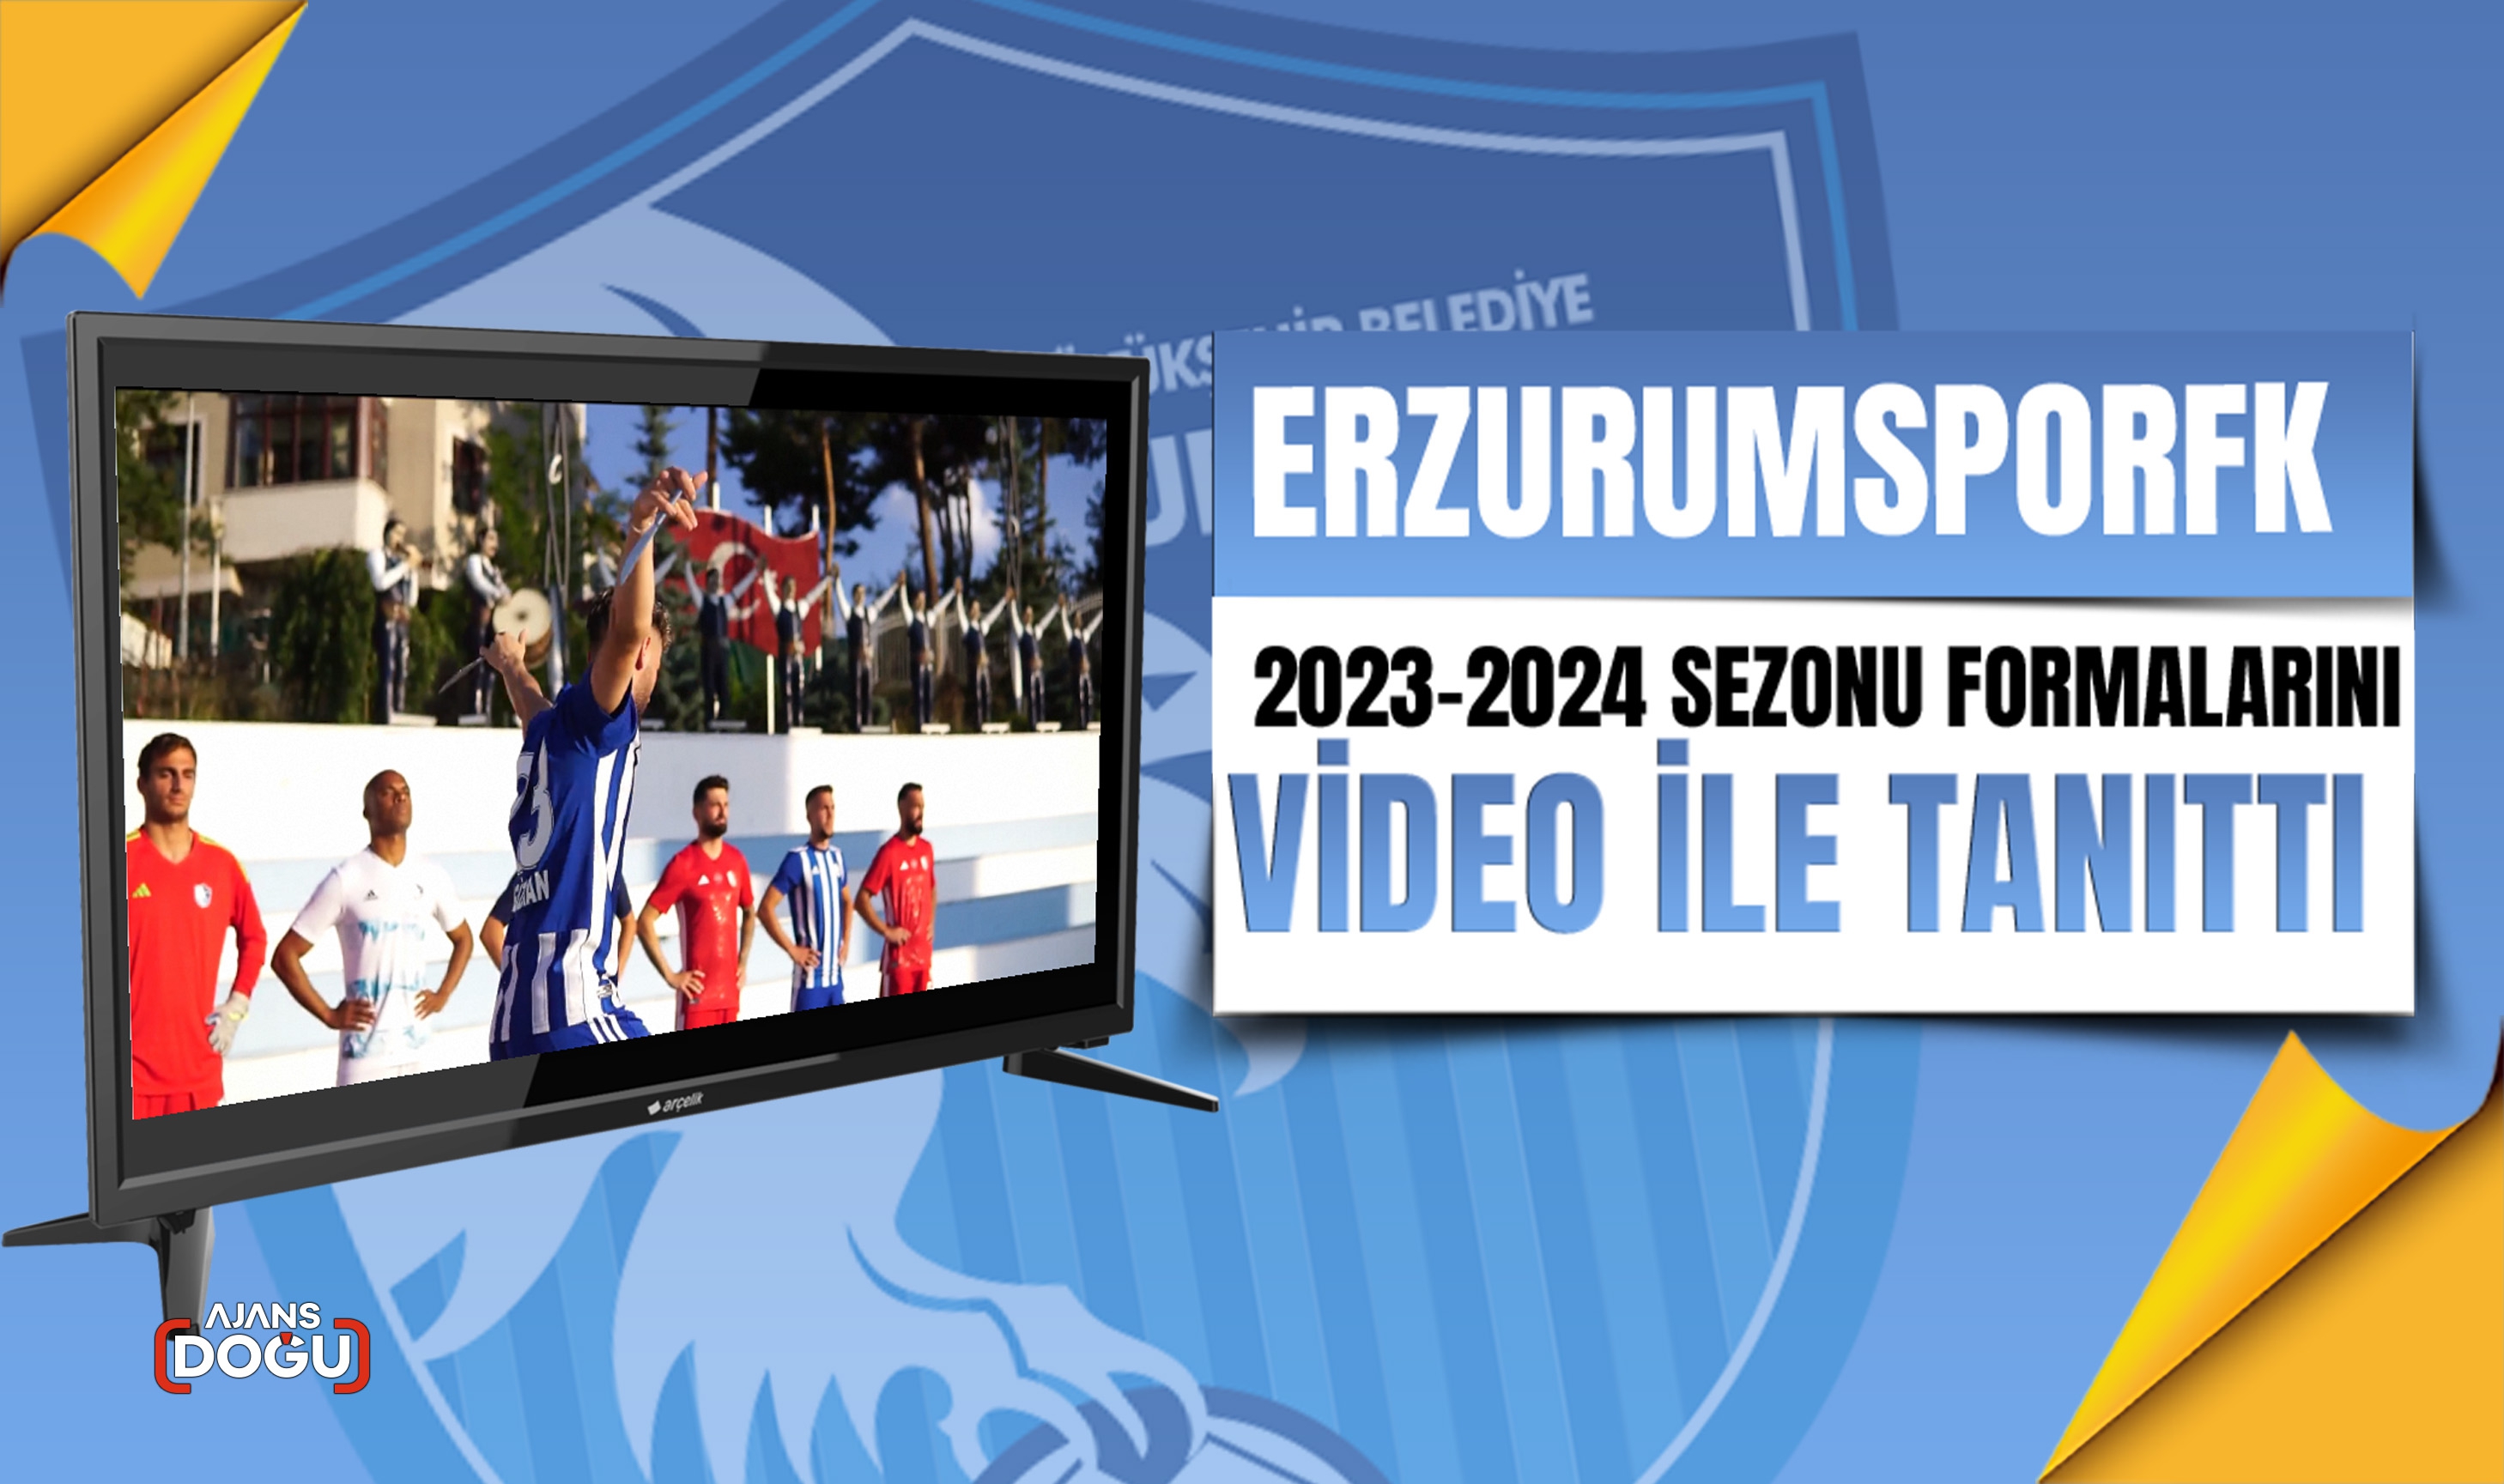 ErzurumsporFK 2023-2024 sezonu formalarını video ile tanıttı.